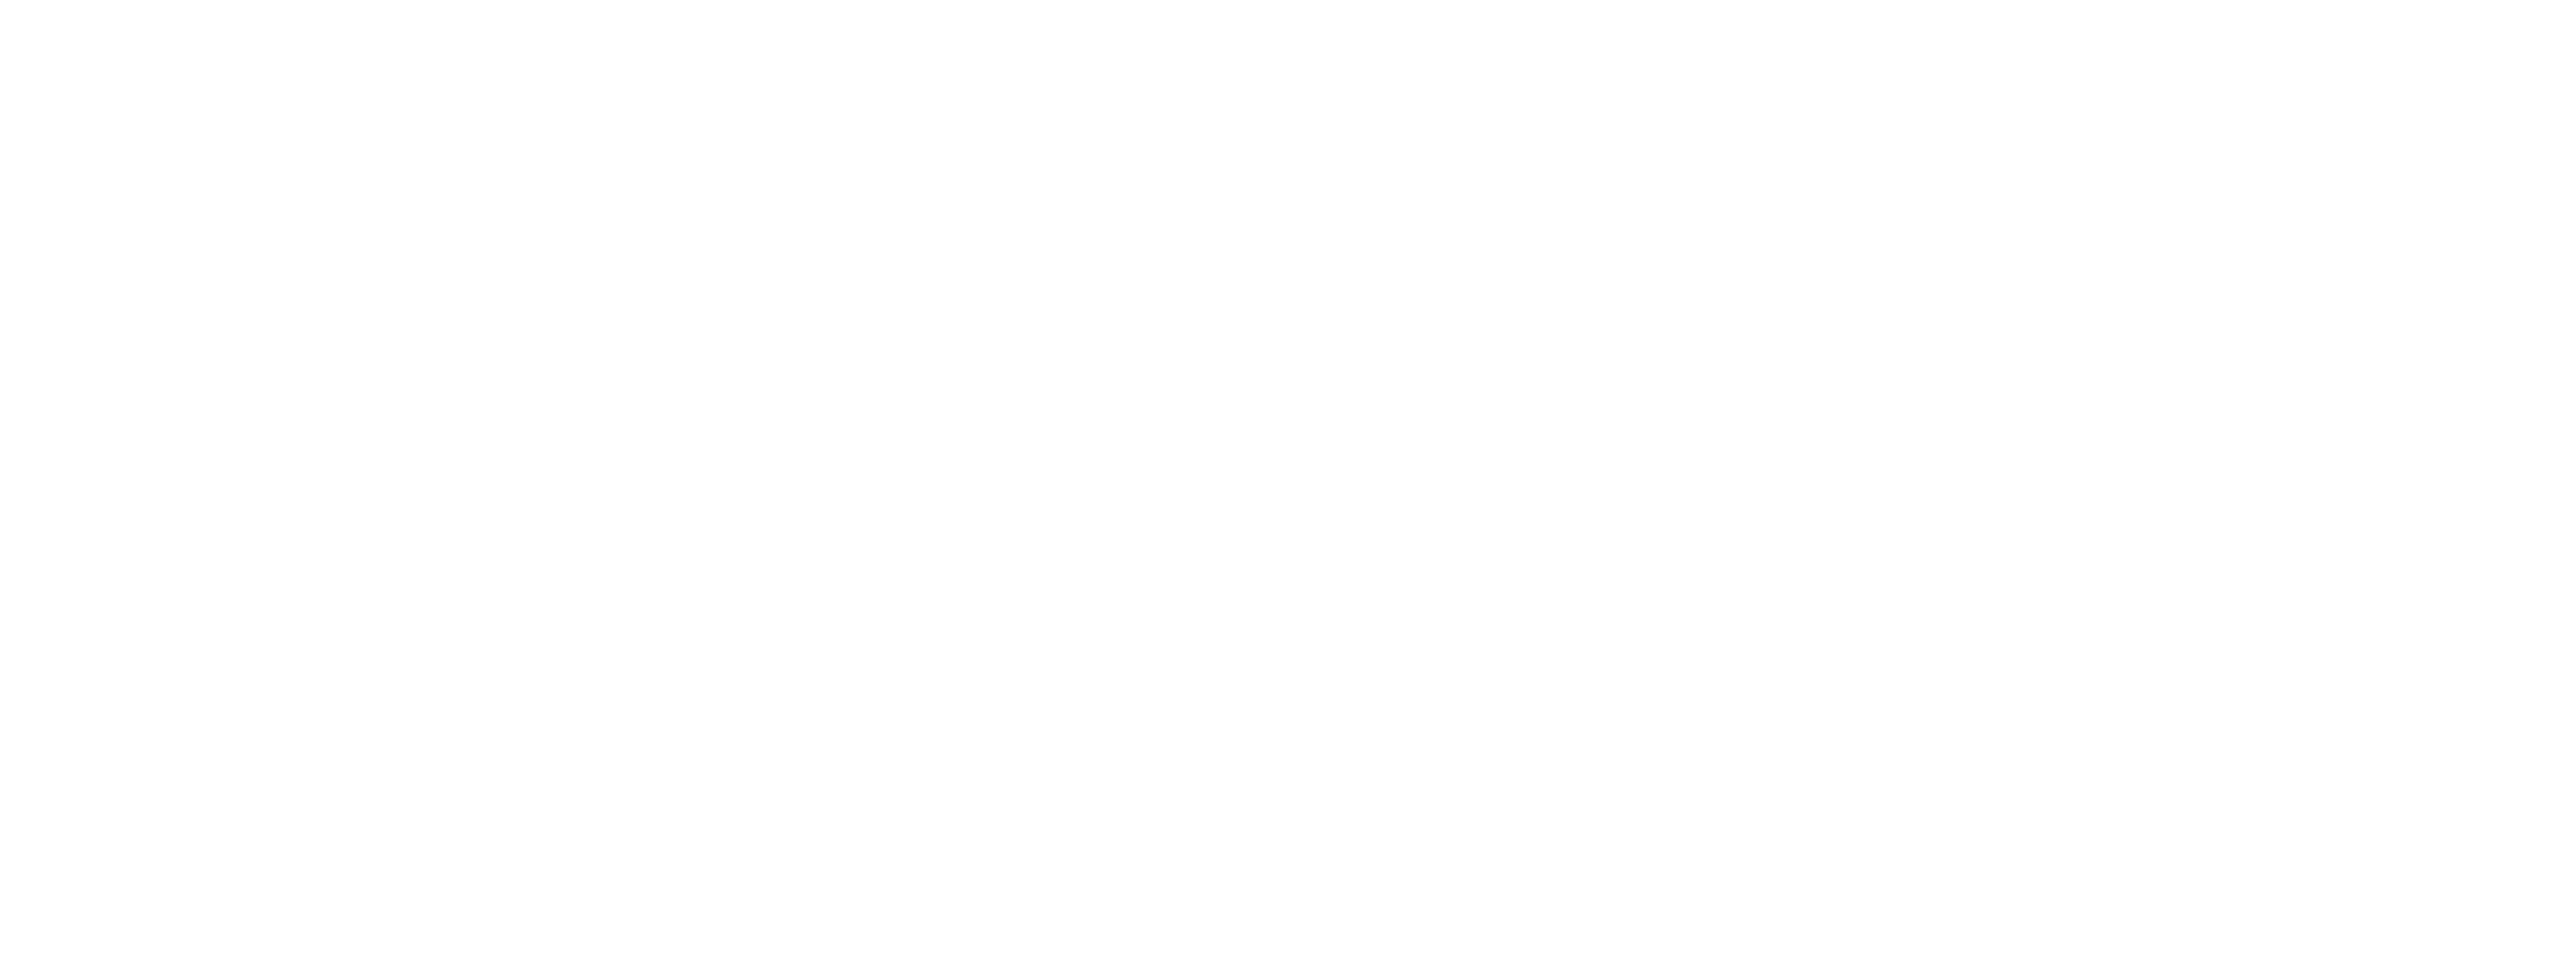 Japanese Craftsmans 理想をカタチにする特殊加工技術。